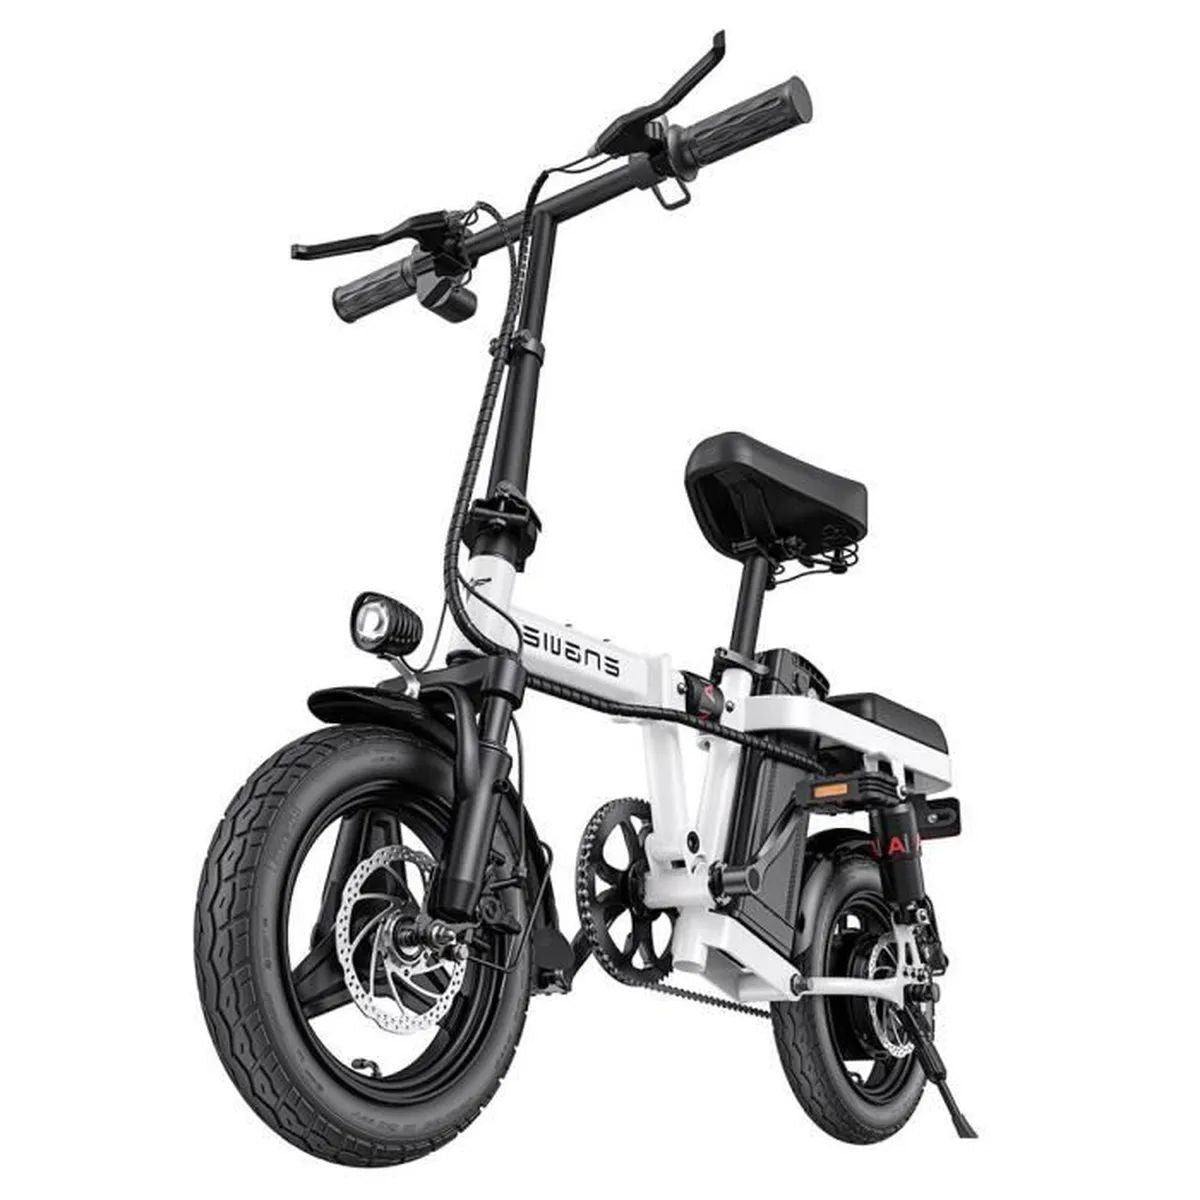 ENGWE T14 EU - Bicicleta elétrica compacta | Autonomia de 45KM | Disco de freio | Cor branca